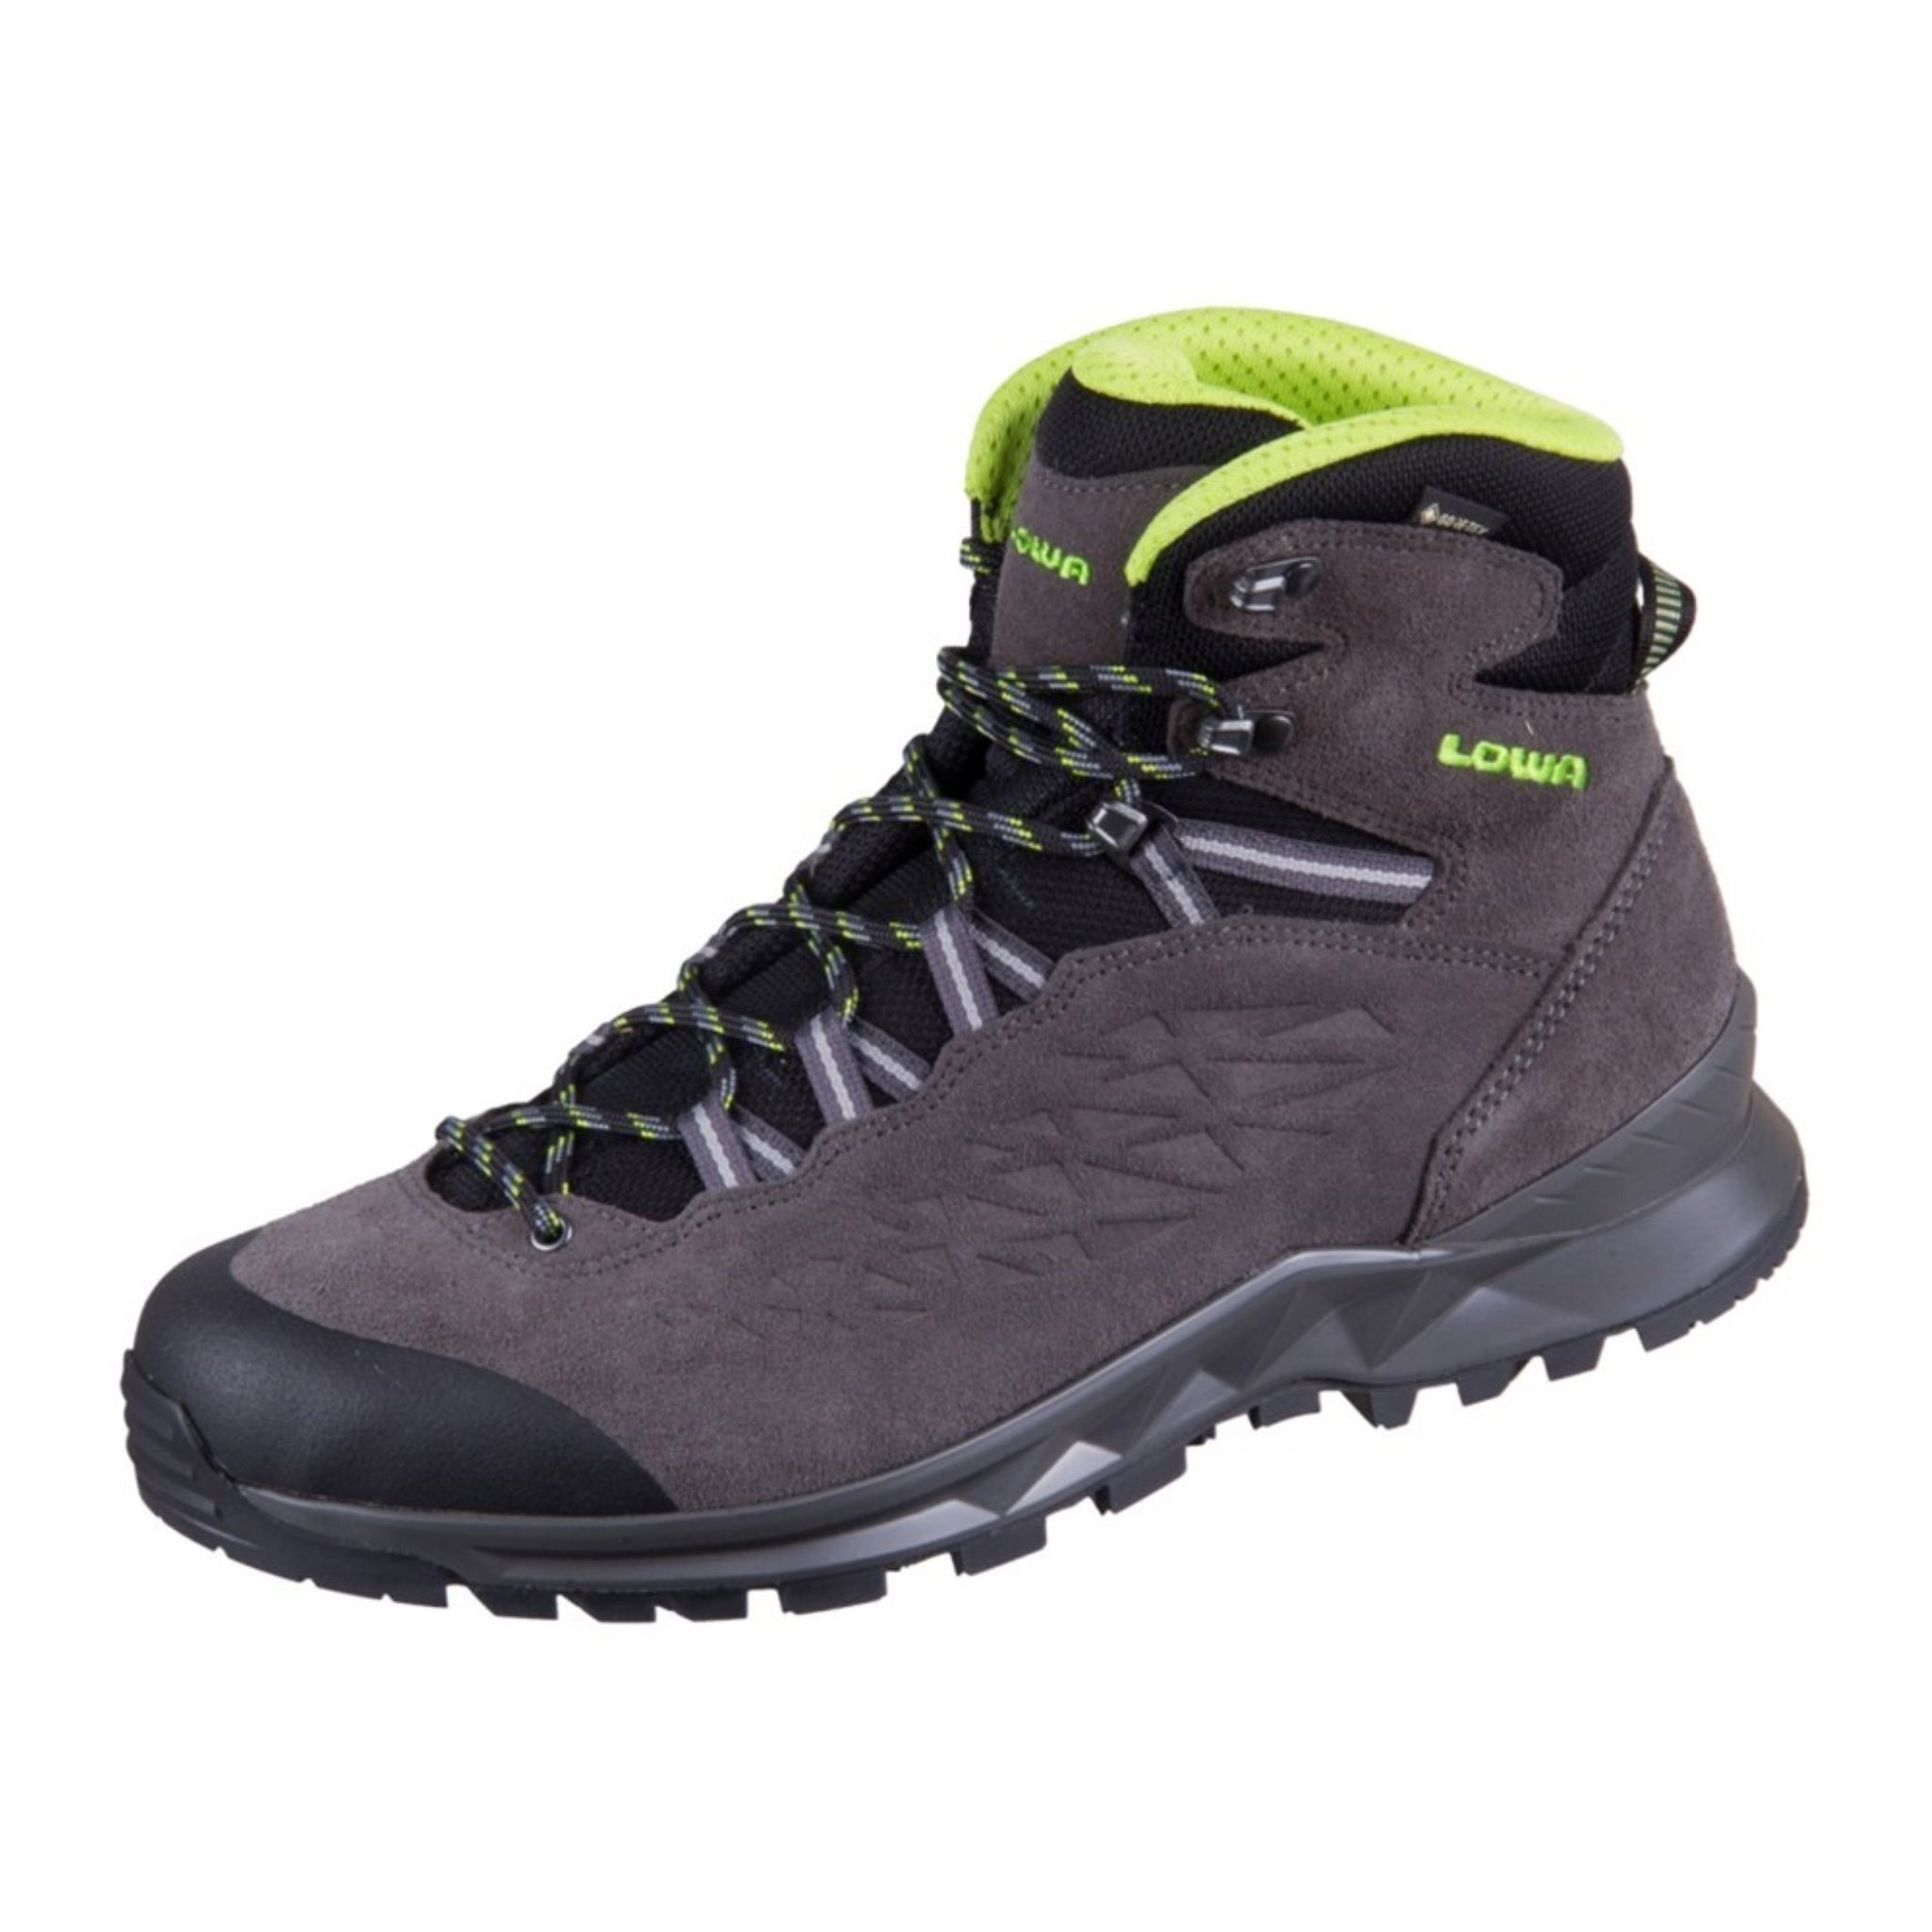 LOWA Explorer GTX Mid - GORE-TEX - Pánska treková obuv Hiking Shoes Grey 210712-9702 , veľkosť: EU 42 UK 8